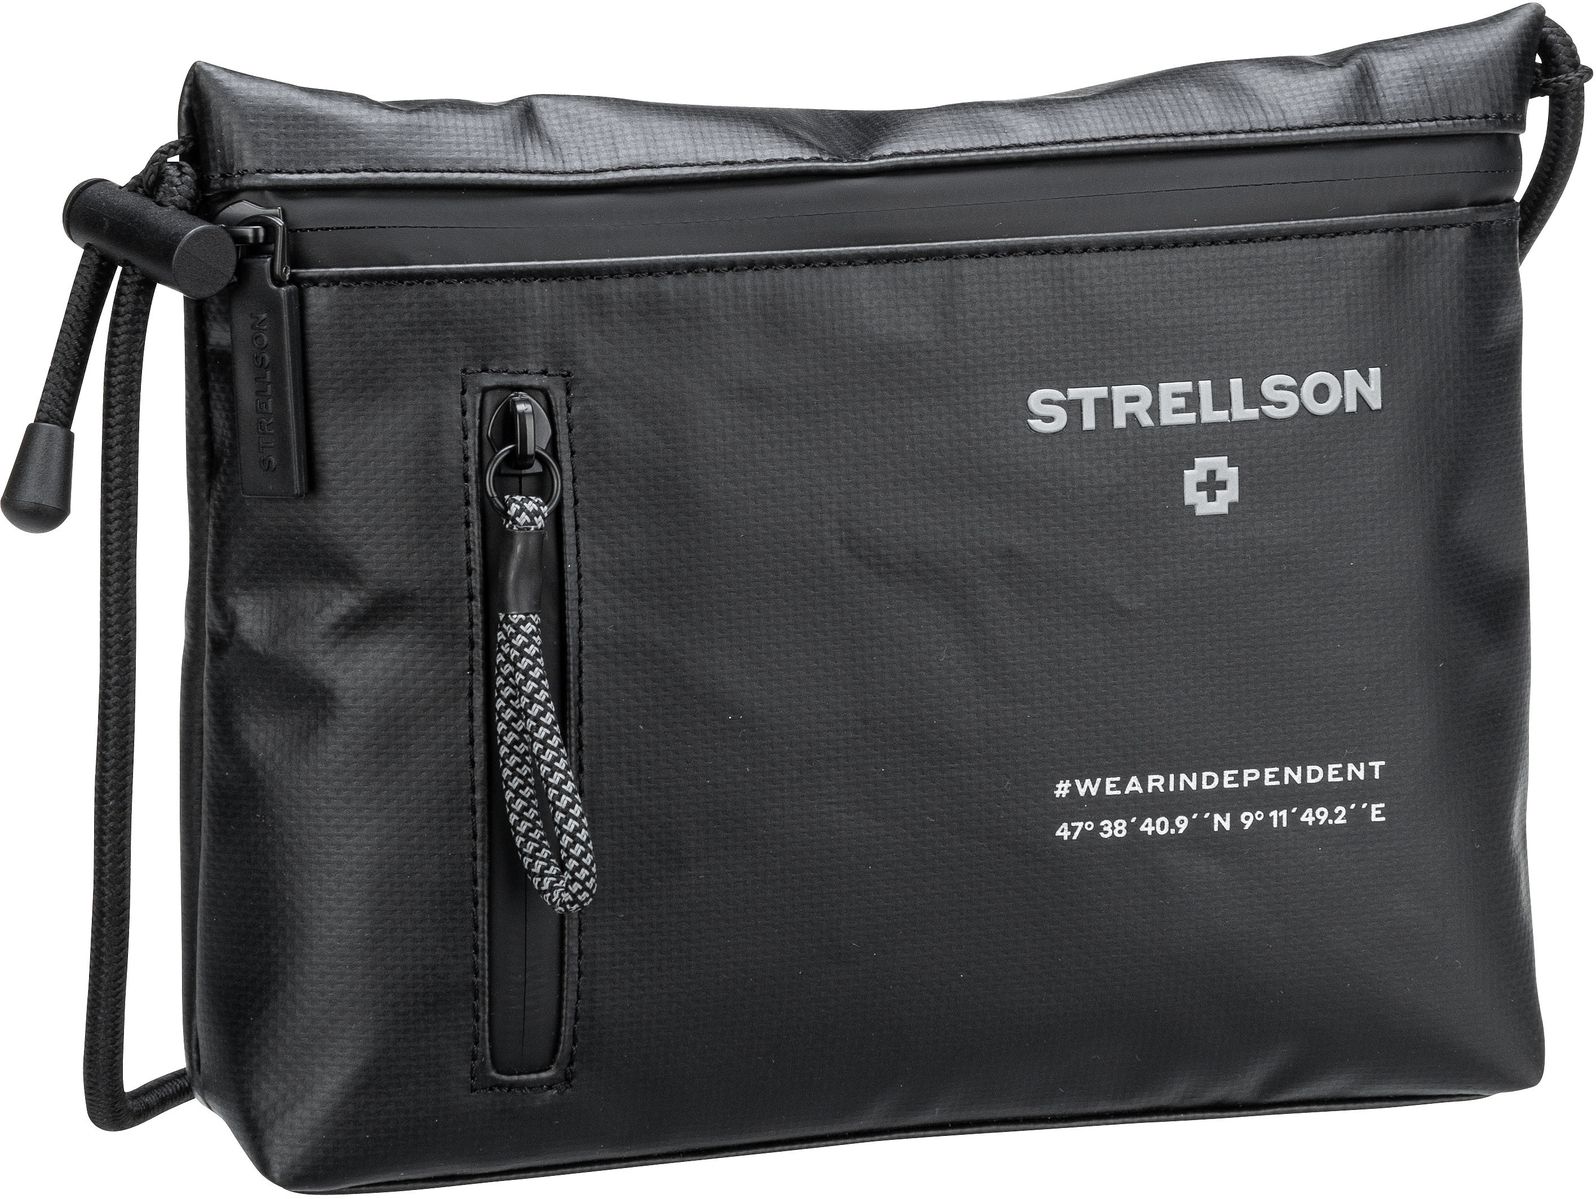 Strellson Stockwell 2.0 Sean Shoulderbag XSHZ  in Schwarz (2.5 Liter), Umhängetasche